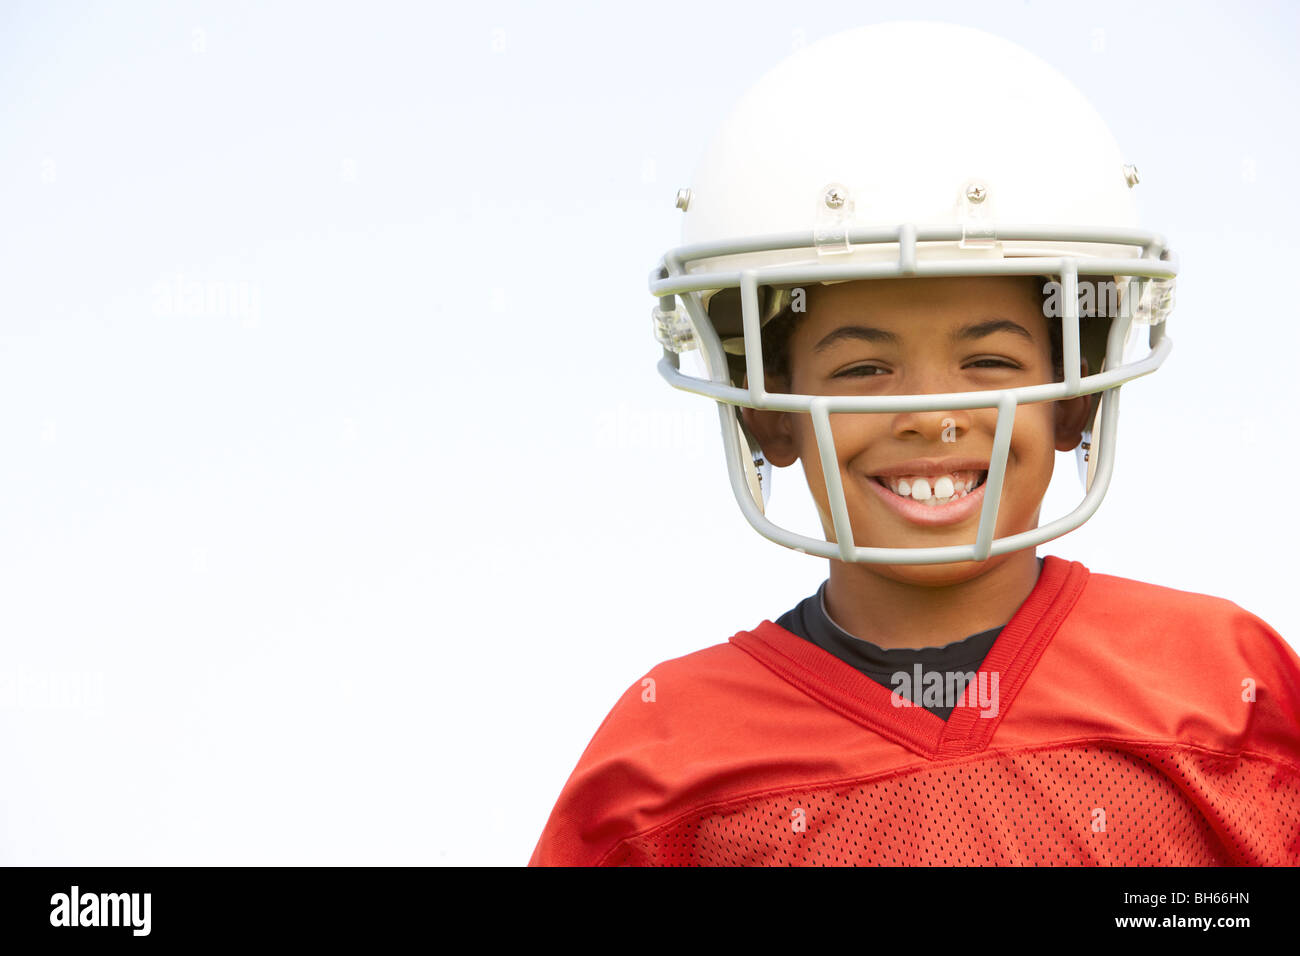 Junge trägt american football helm -Fotos und -Bildmaterial in hoher  Auflösung – Alamy